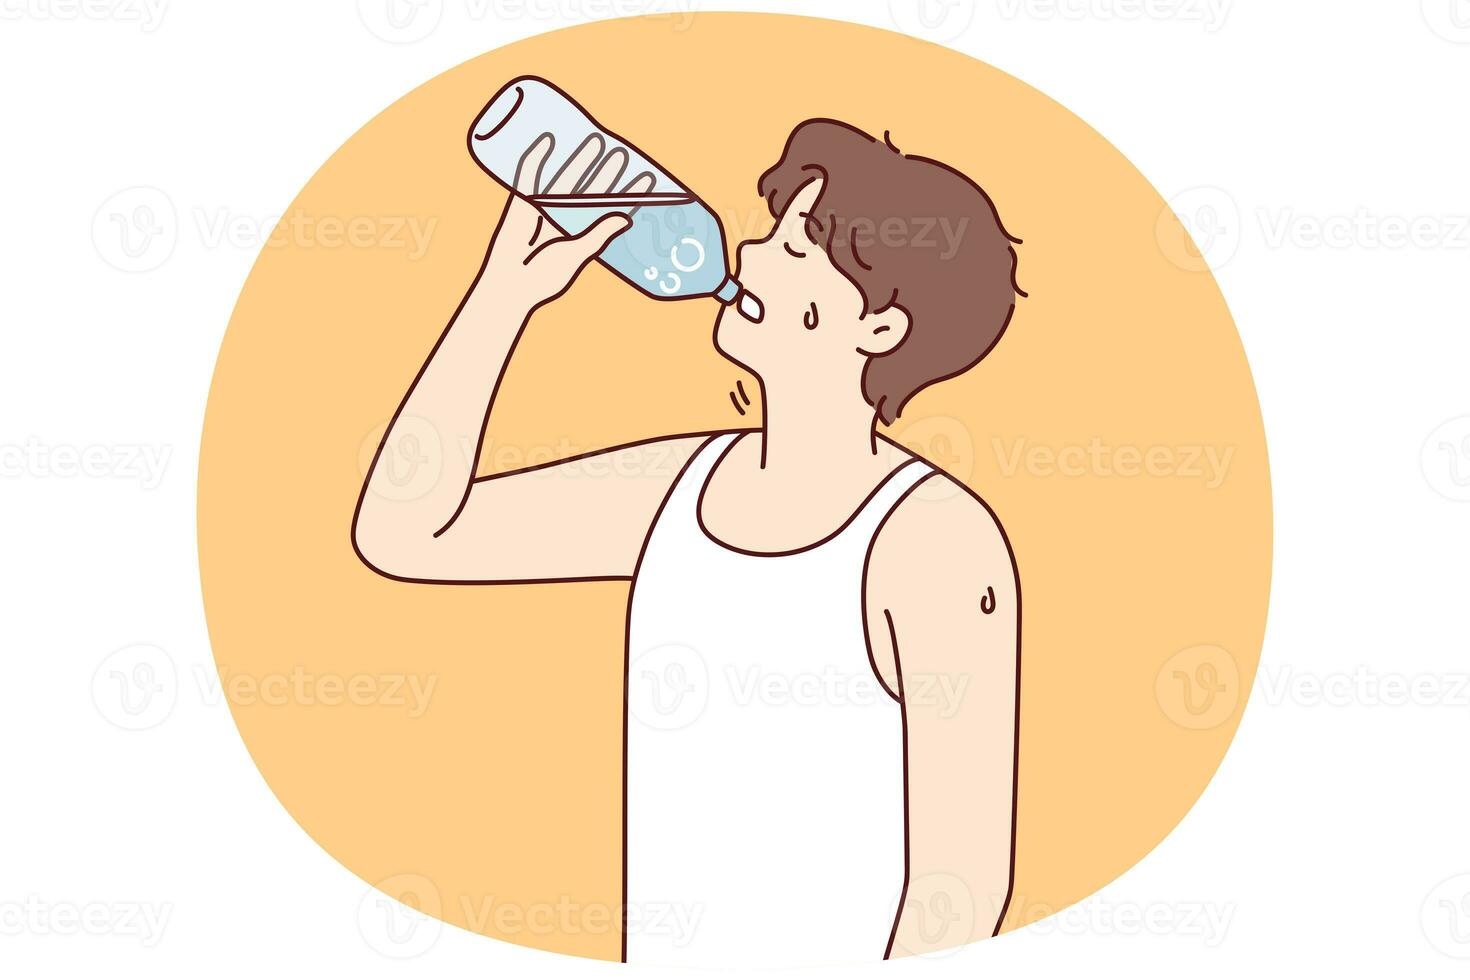 törstig man dricka vatten från flaska foto